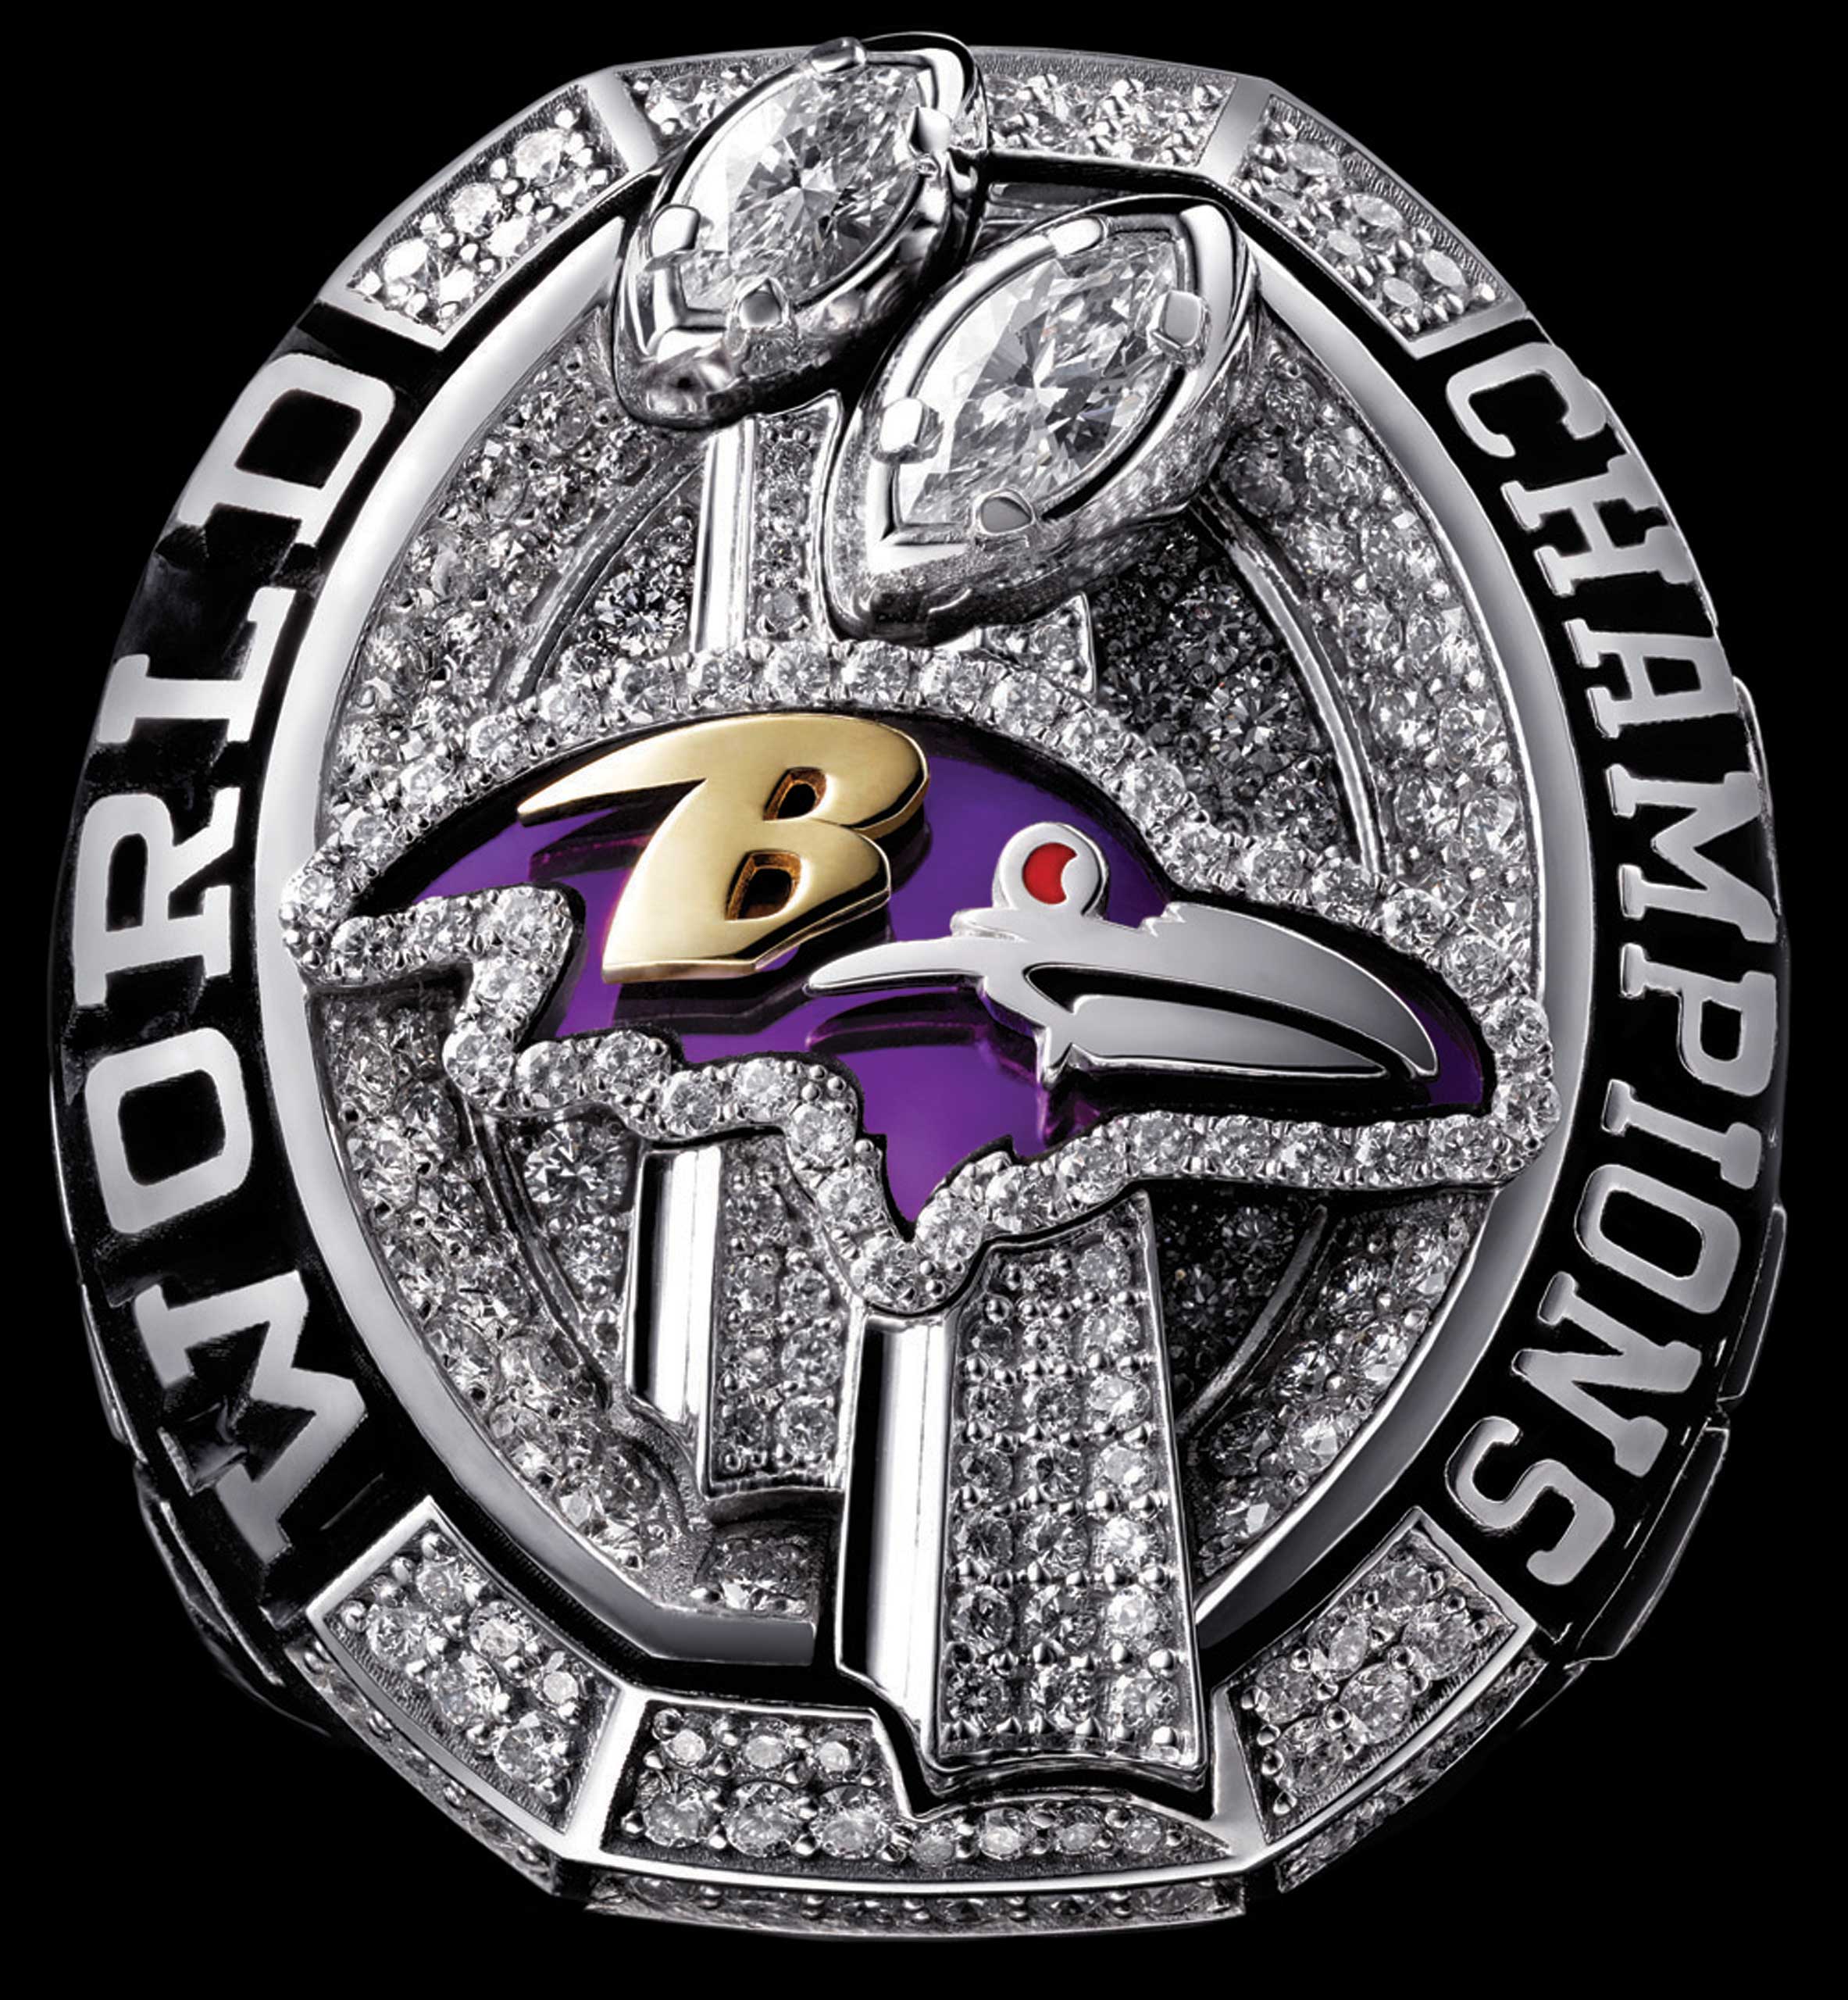 Super Bowl XLVII - Baltimore Ravens